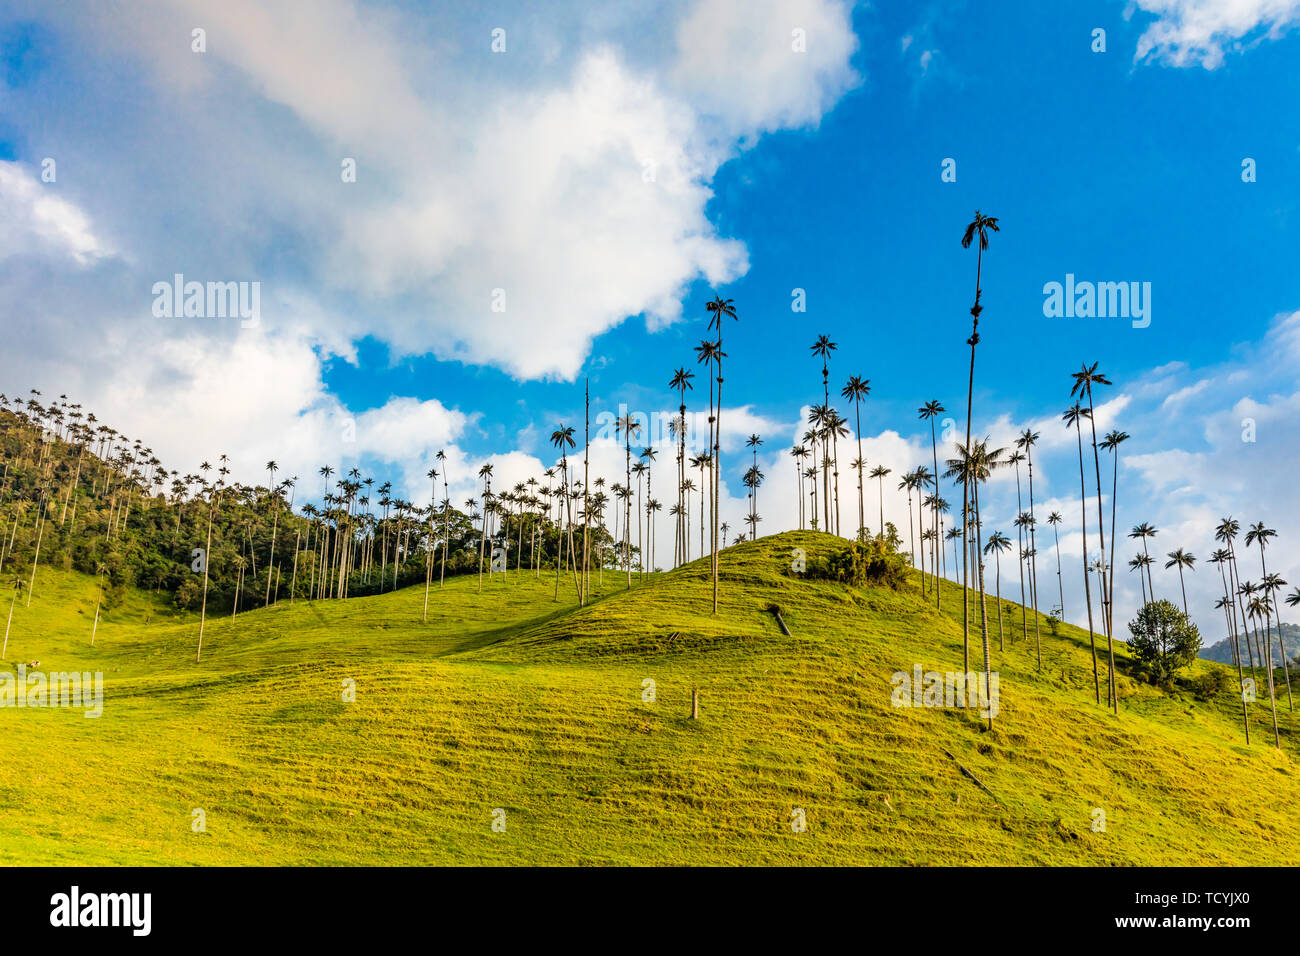 El Bosque de Las Palmas Landscapes of  palm trees in Valley Cocora  near Salento Quindio in Colombia South America Stock Photo